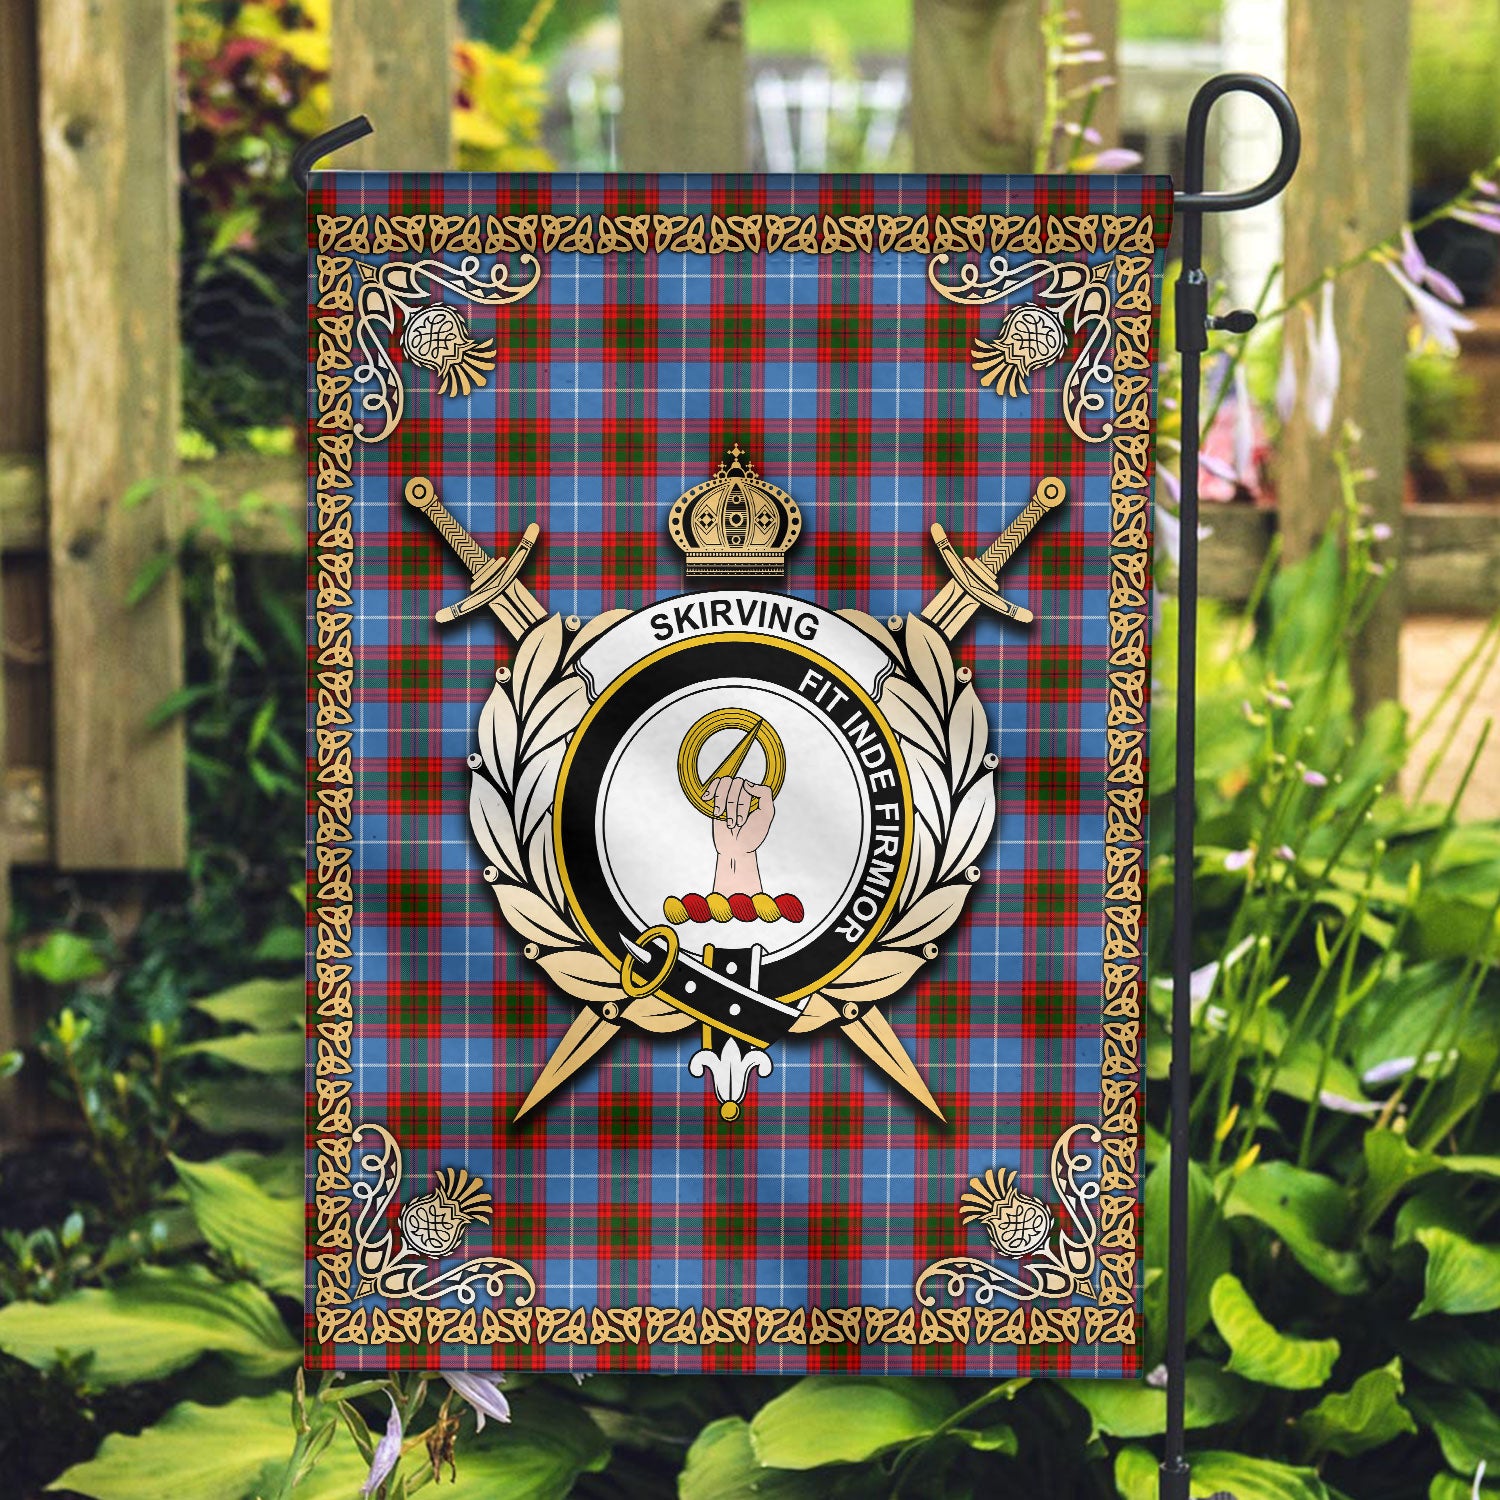 Skirving Tartan Crest Garden Flag - Celtic Thistle Style